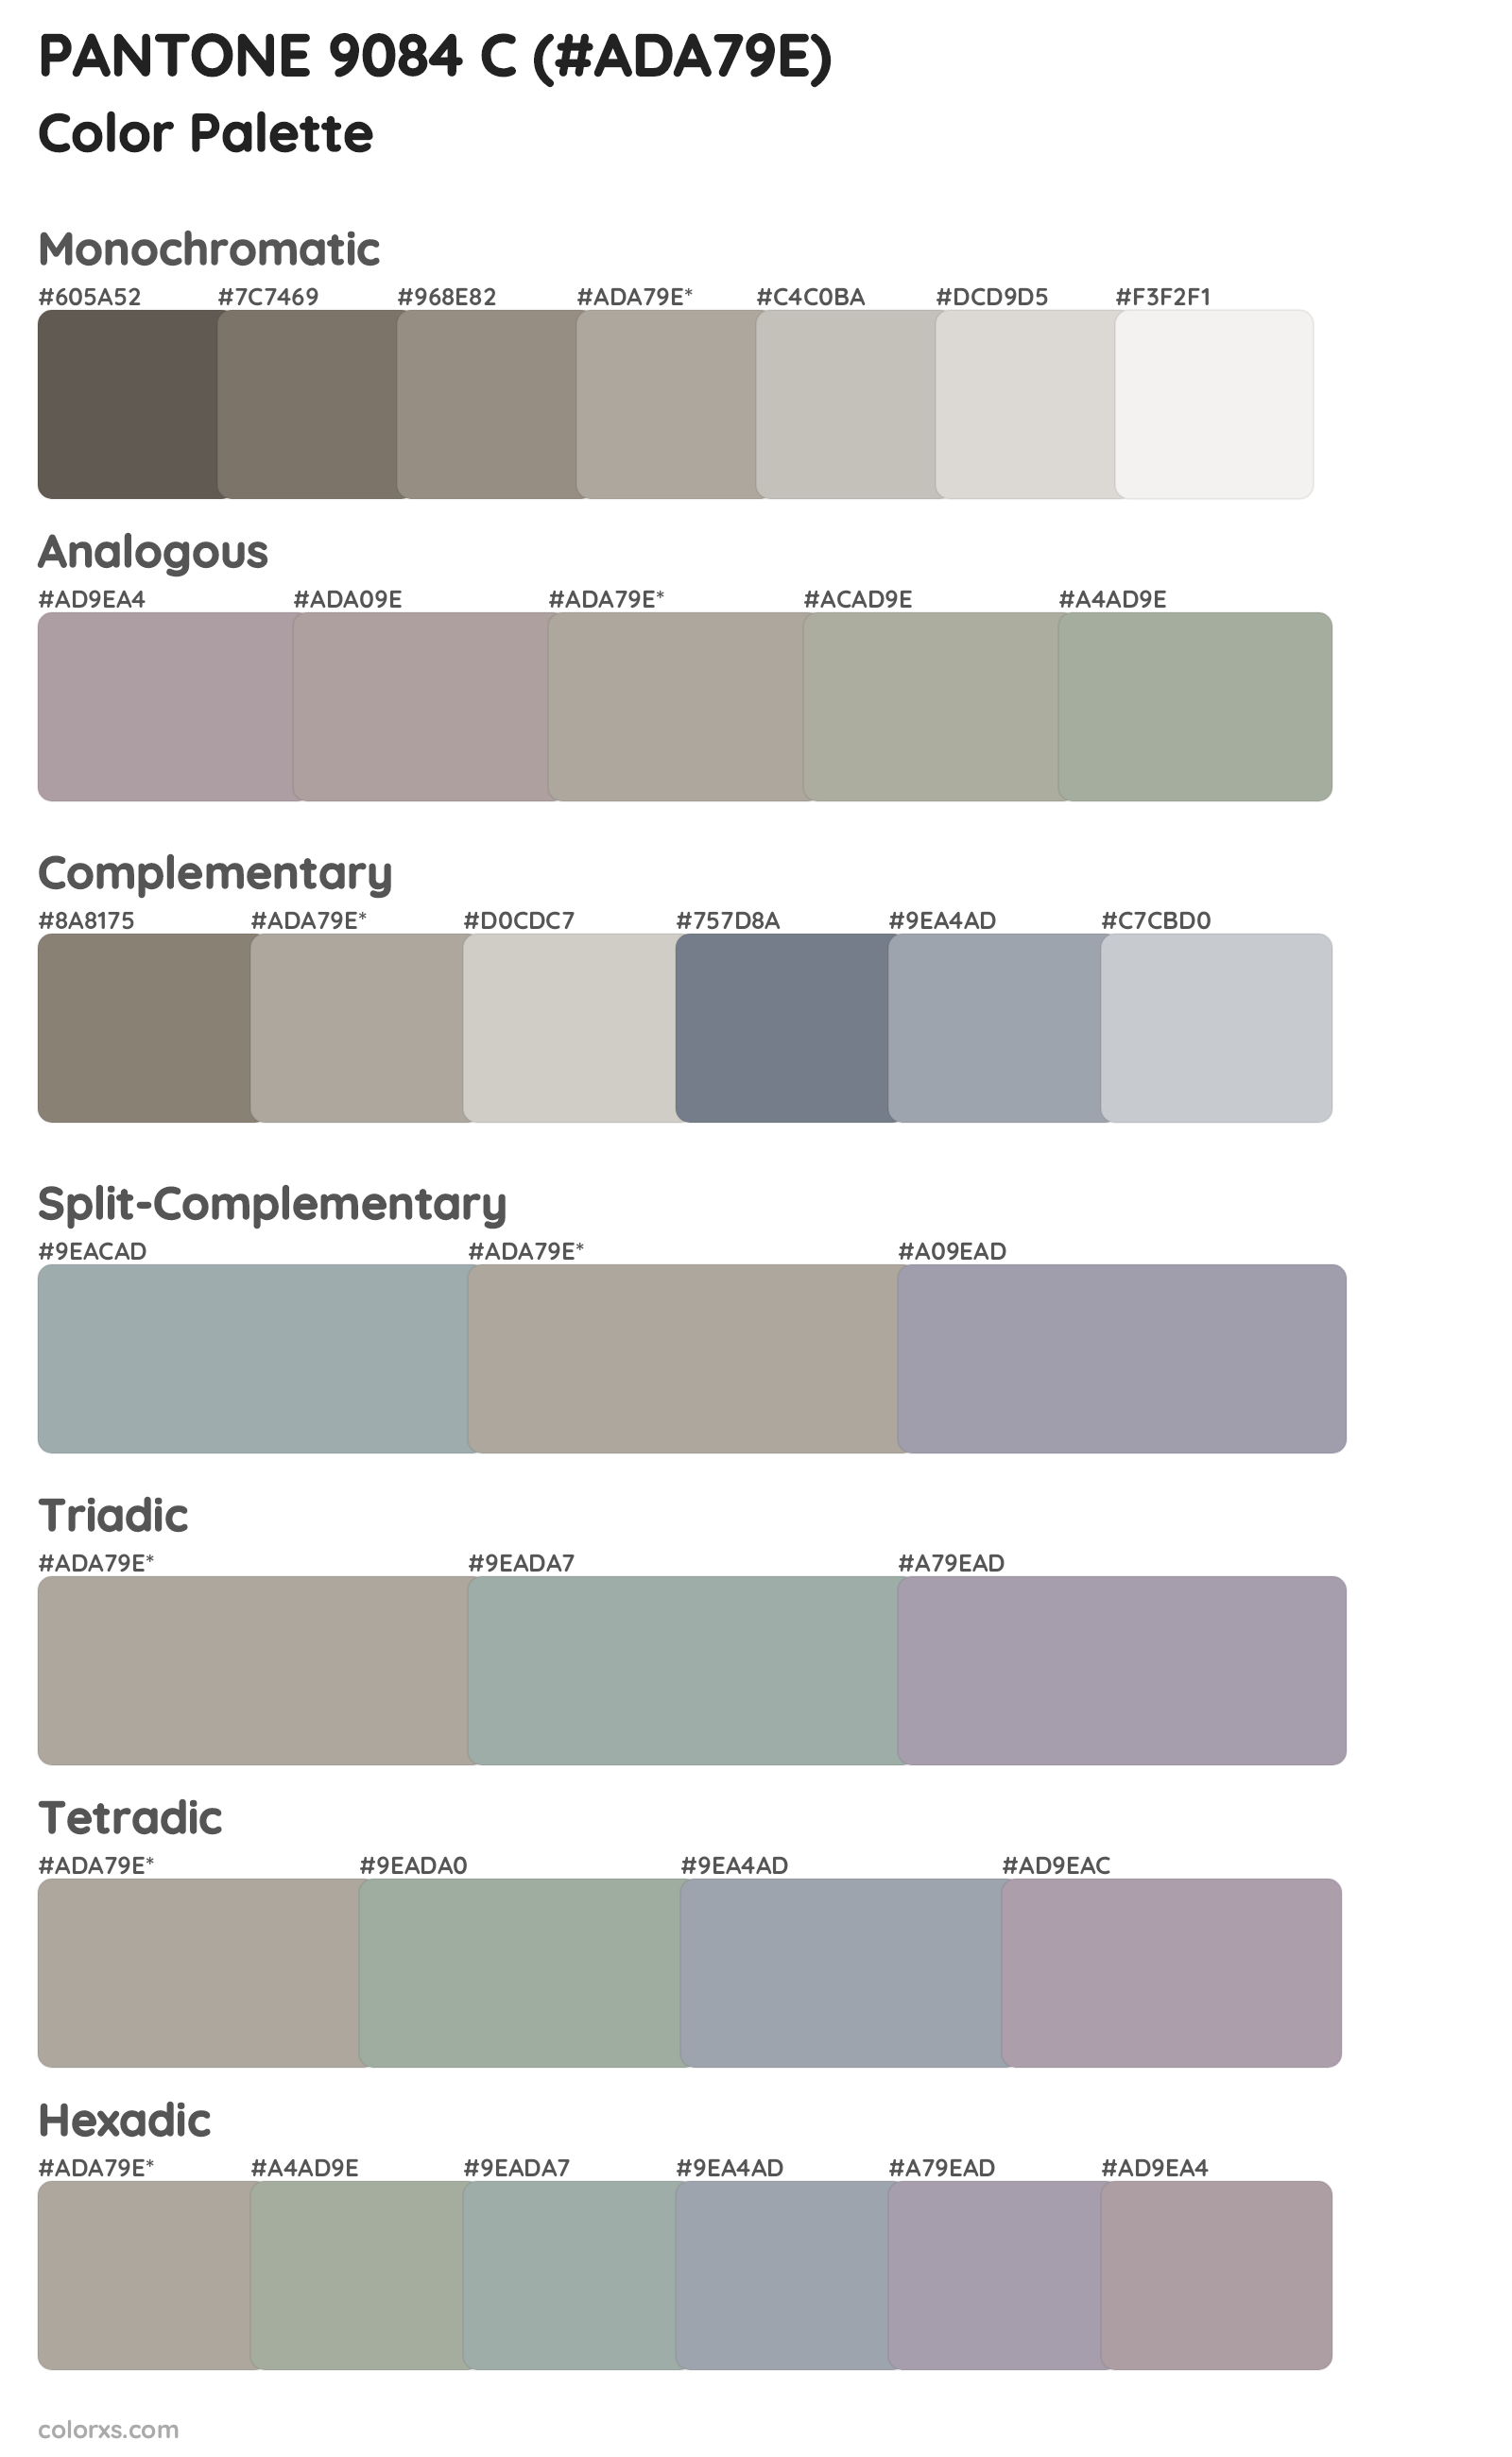 PANTONE 9084 C Color Scheme Palettes